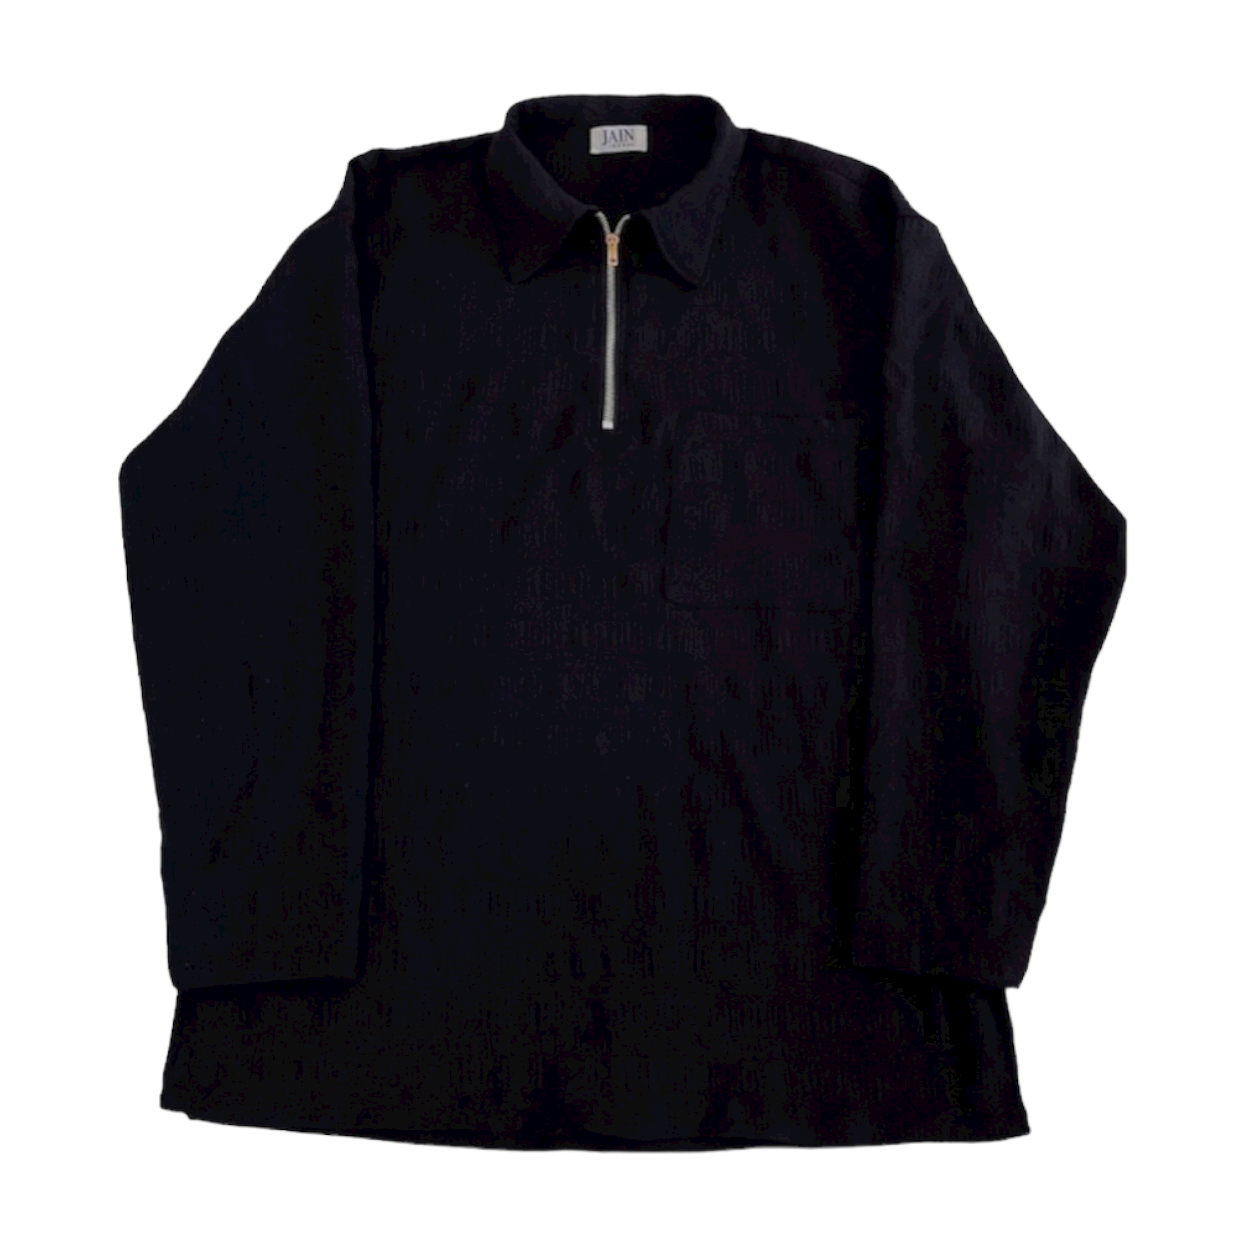 Kiri Shirt (Black)